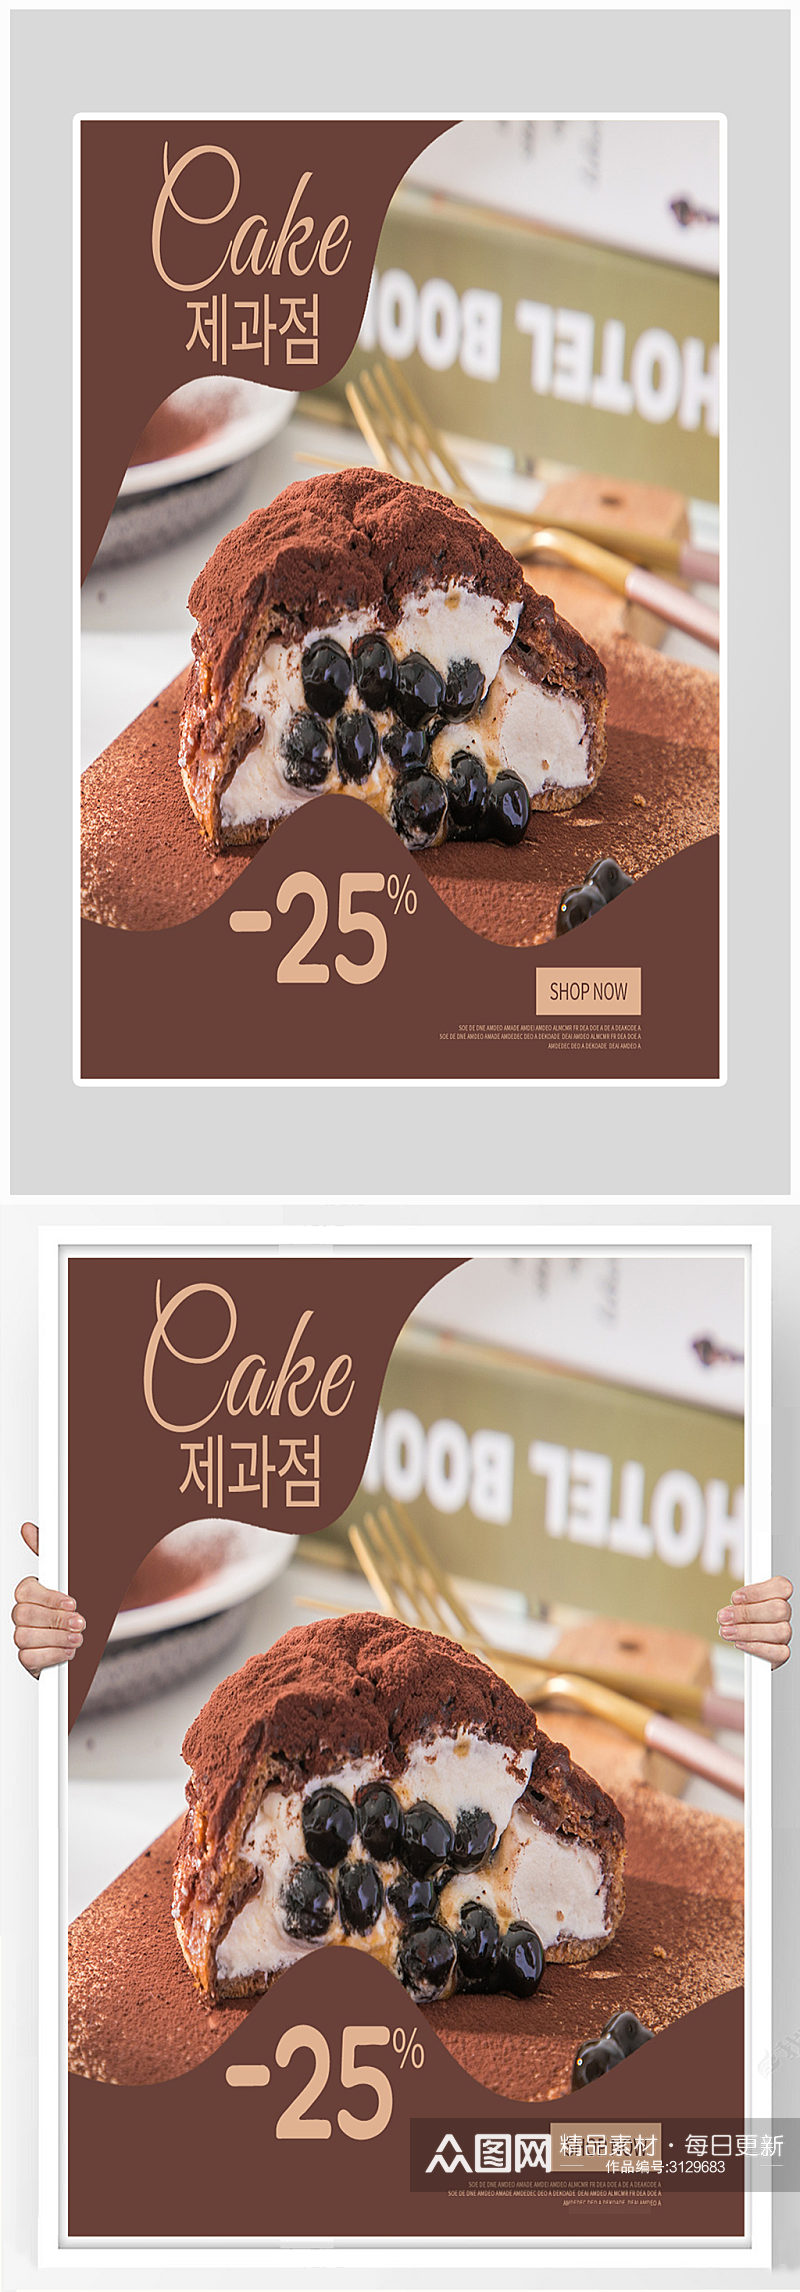 创意美食高点蛋糕生活海报设计素材